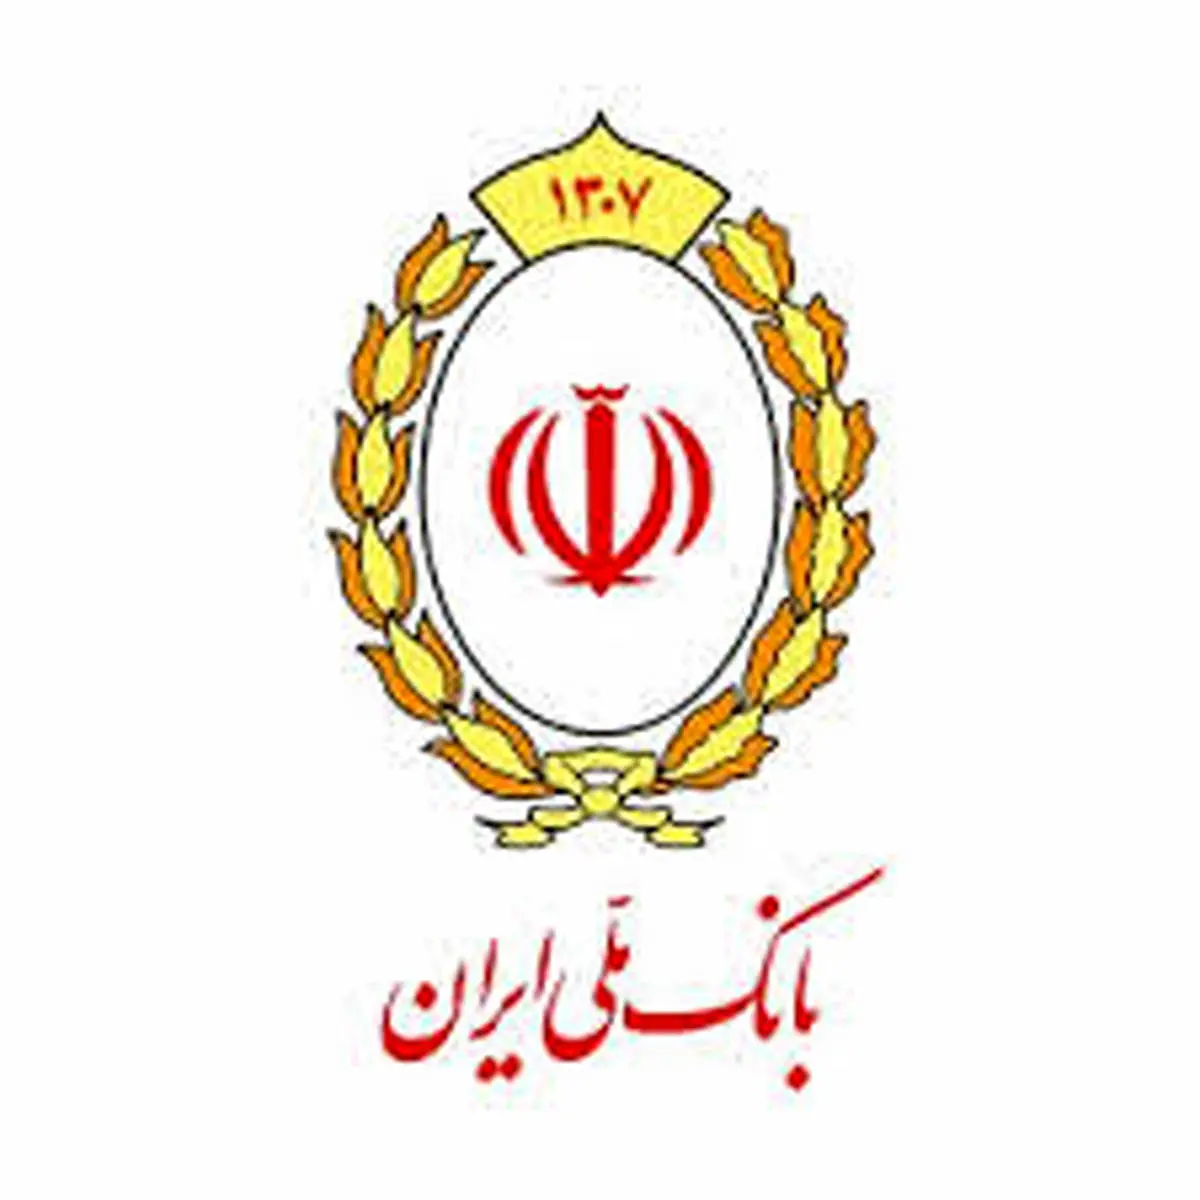 واگذاری چک، بدون حضور در شعب بانک ملی ایران

